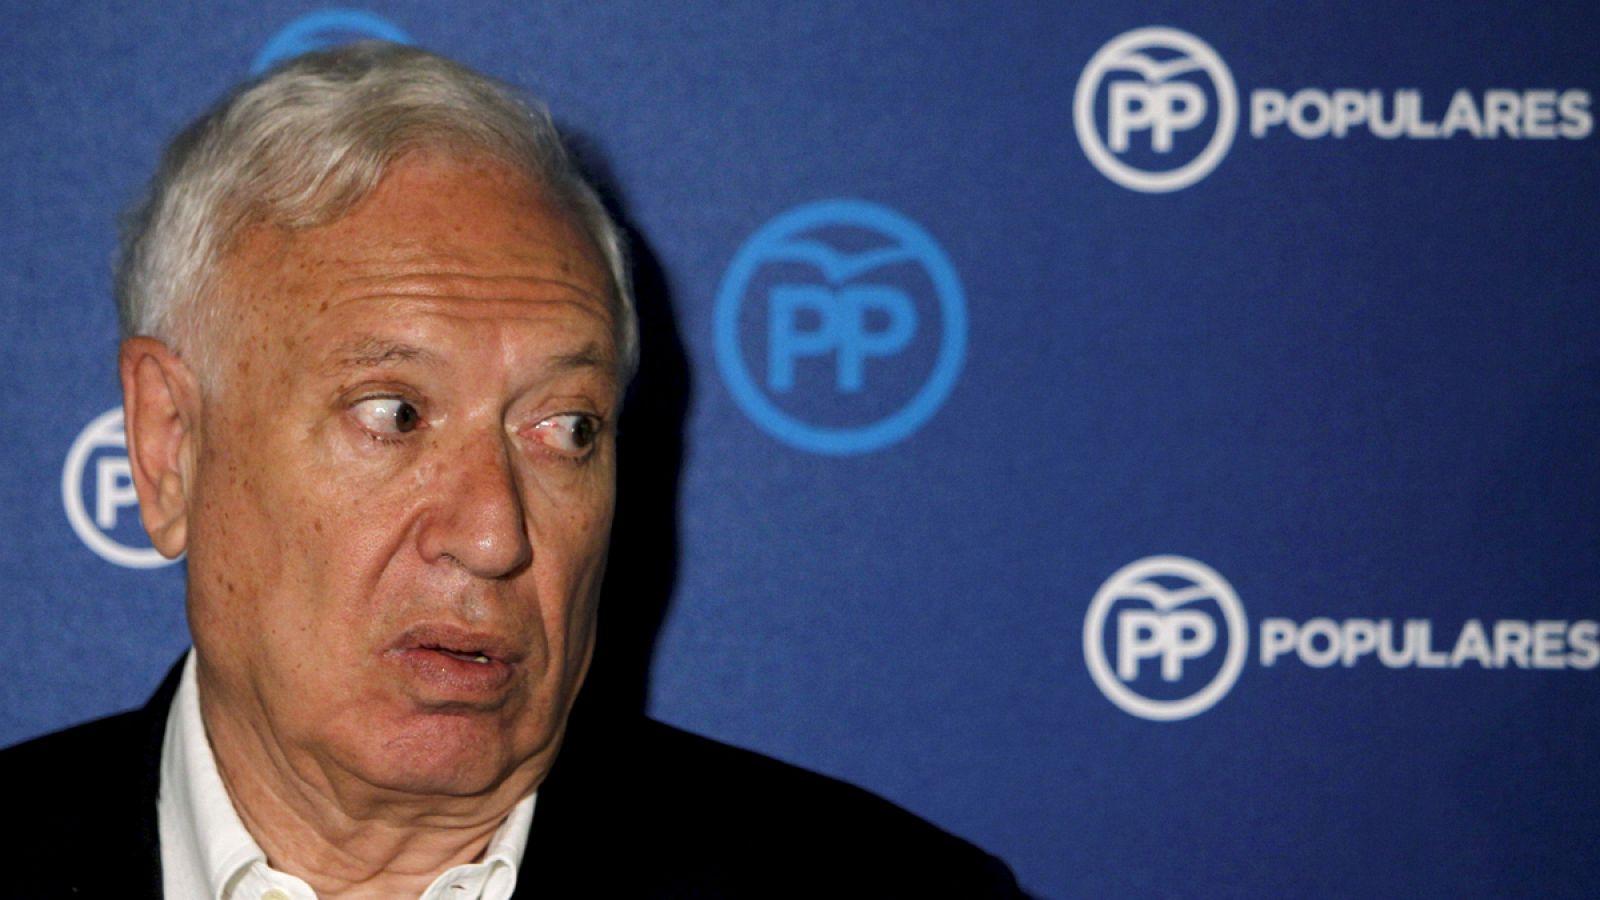 El candidato a la presidencia del PP José Manuel García Margallo atiende a los medios